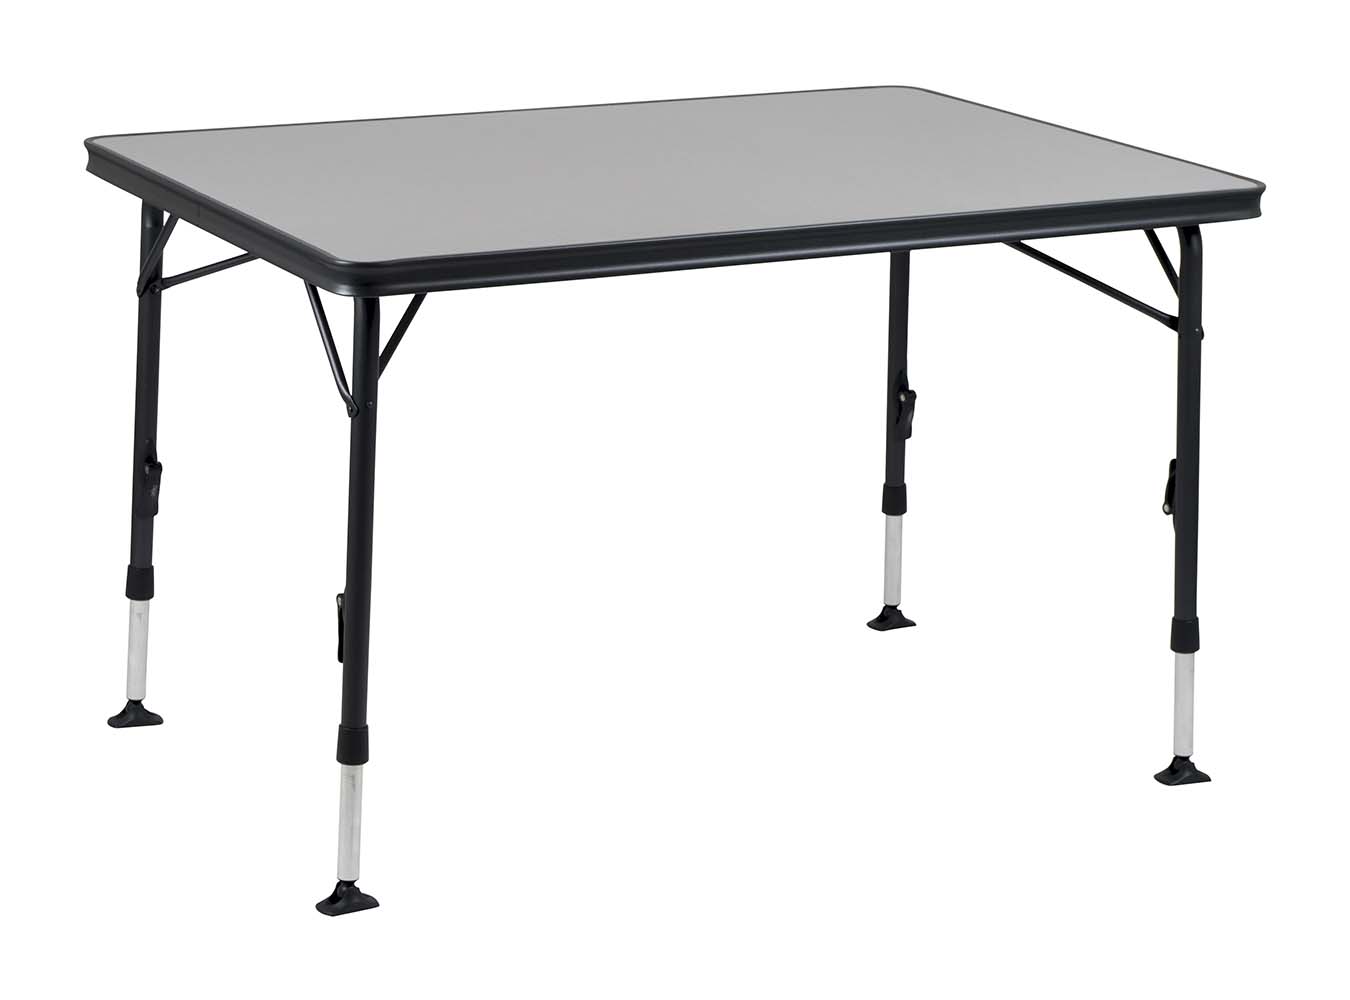 1151400 Ein sehr stabiler Tisch dank hoher Qualität. Durch seine einzigartige Konstruktion ist dieser Tisch einfach auf- und zuzuklappen. Die Beine sind nach dem Einklappen sicher in den Aluminiumschienen an der Unterseite der Tischplatte zu befestigen, die wiederum für eine zusätzliche Verstärkung sorgen.  Die große Tischplatte kann 4-6 Personen beherbergen. Dank hochwertiger Materialien und der hitzebeständigen und wasserfesten Tischplatte, wird eine lange Lebensdauer gewährleistet. Die Beine sorgen für hohe Stabilität durch die dicken und extra verstärkten Rohre.  Die Stabilisierungsfüße sorgen für zusätzlichen Halt auf jeder Oberfläche. Dieser Tisch ist durch den Alu-Rahmen leichtgewichtig und leicht zu transportieren.